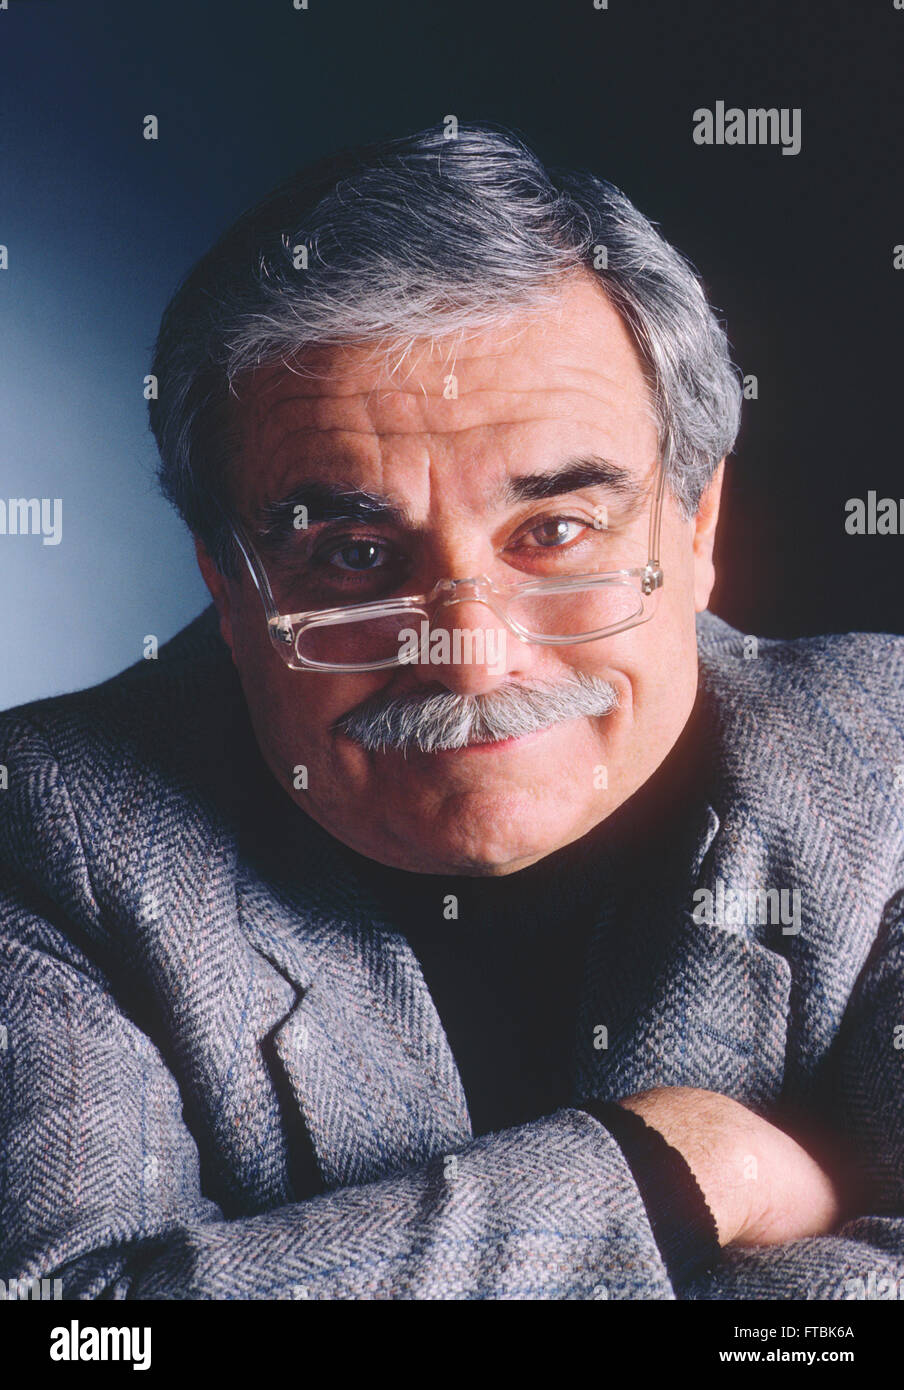 Ritratto in studio di distinto anziano signore con occhiali, baffi e capelli grigi Foto Stock